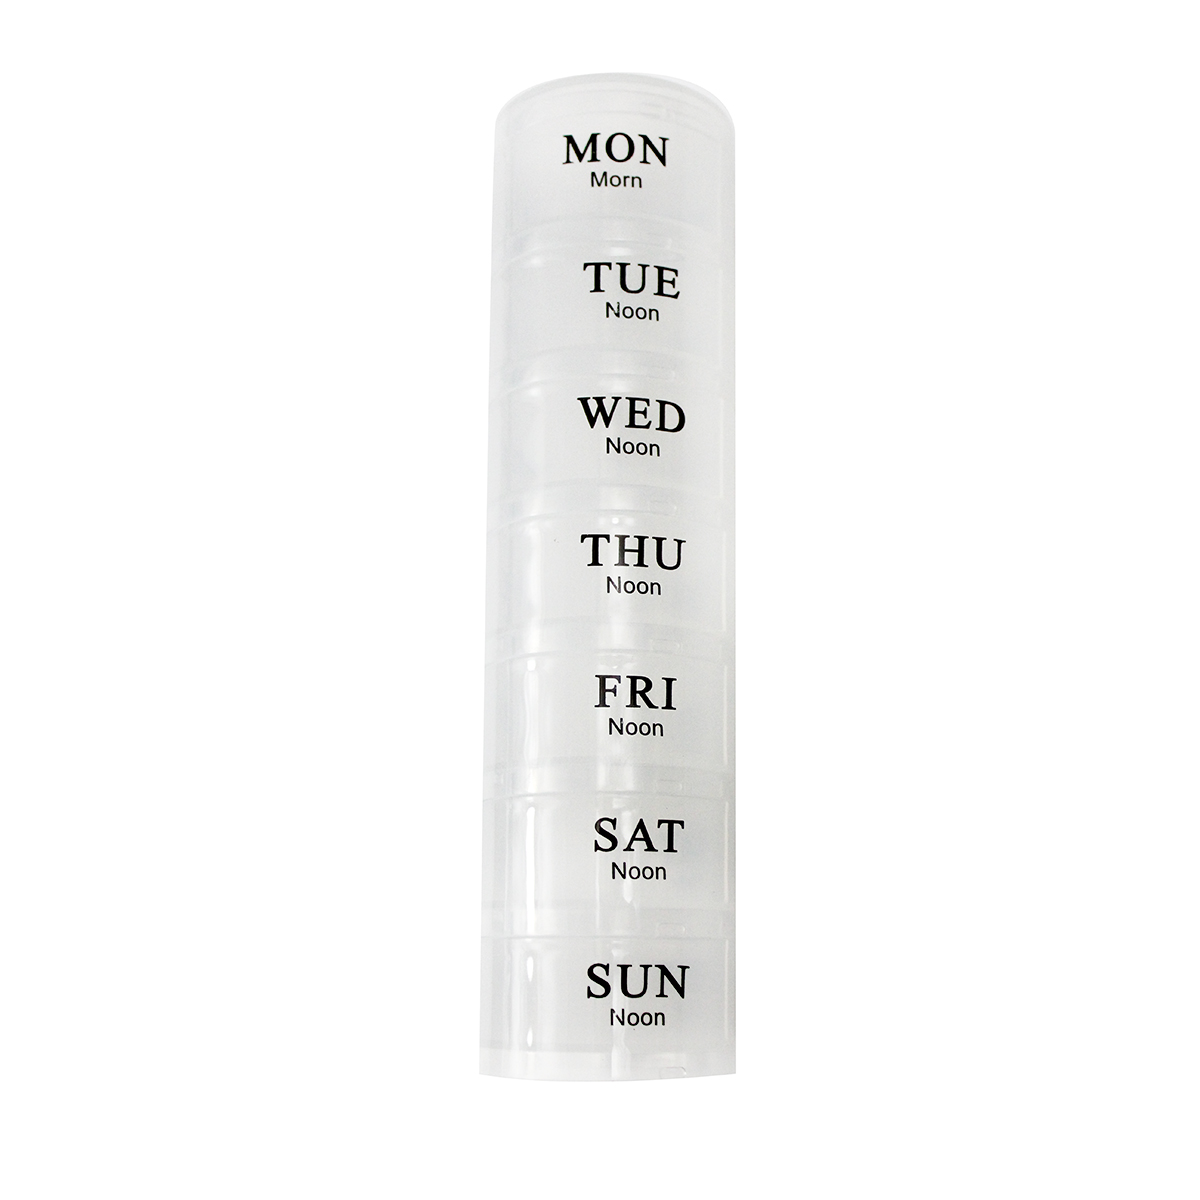 Цилиндр для дизайна "Неделя", 21 секция